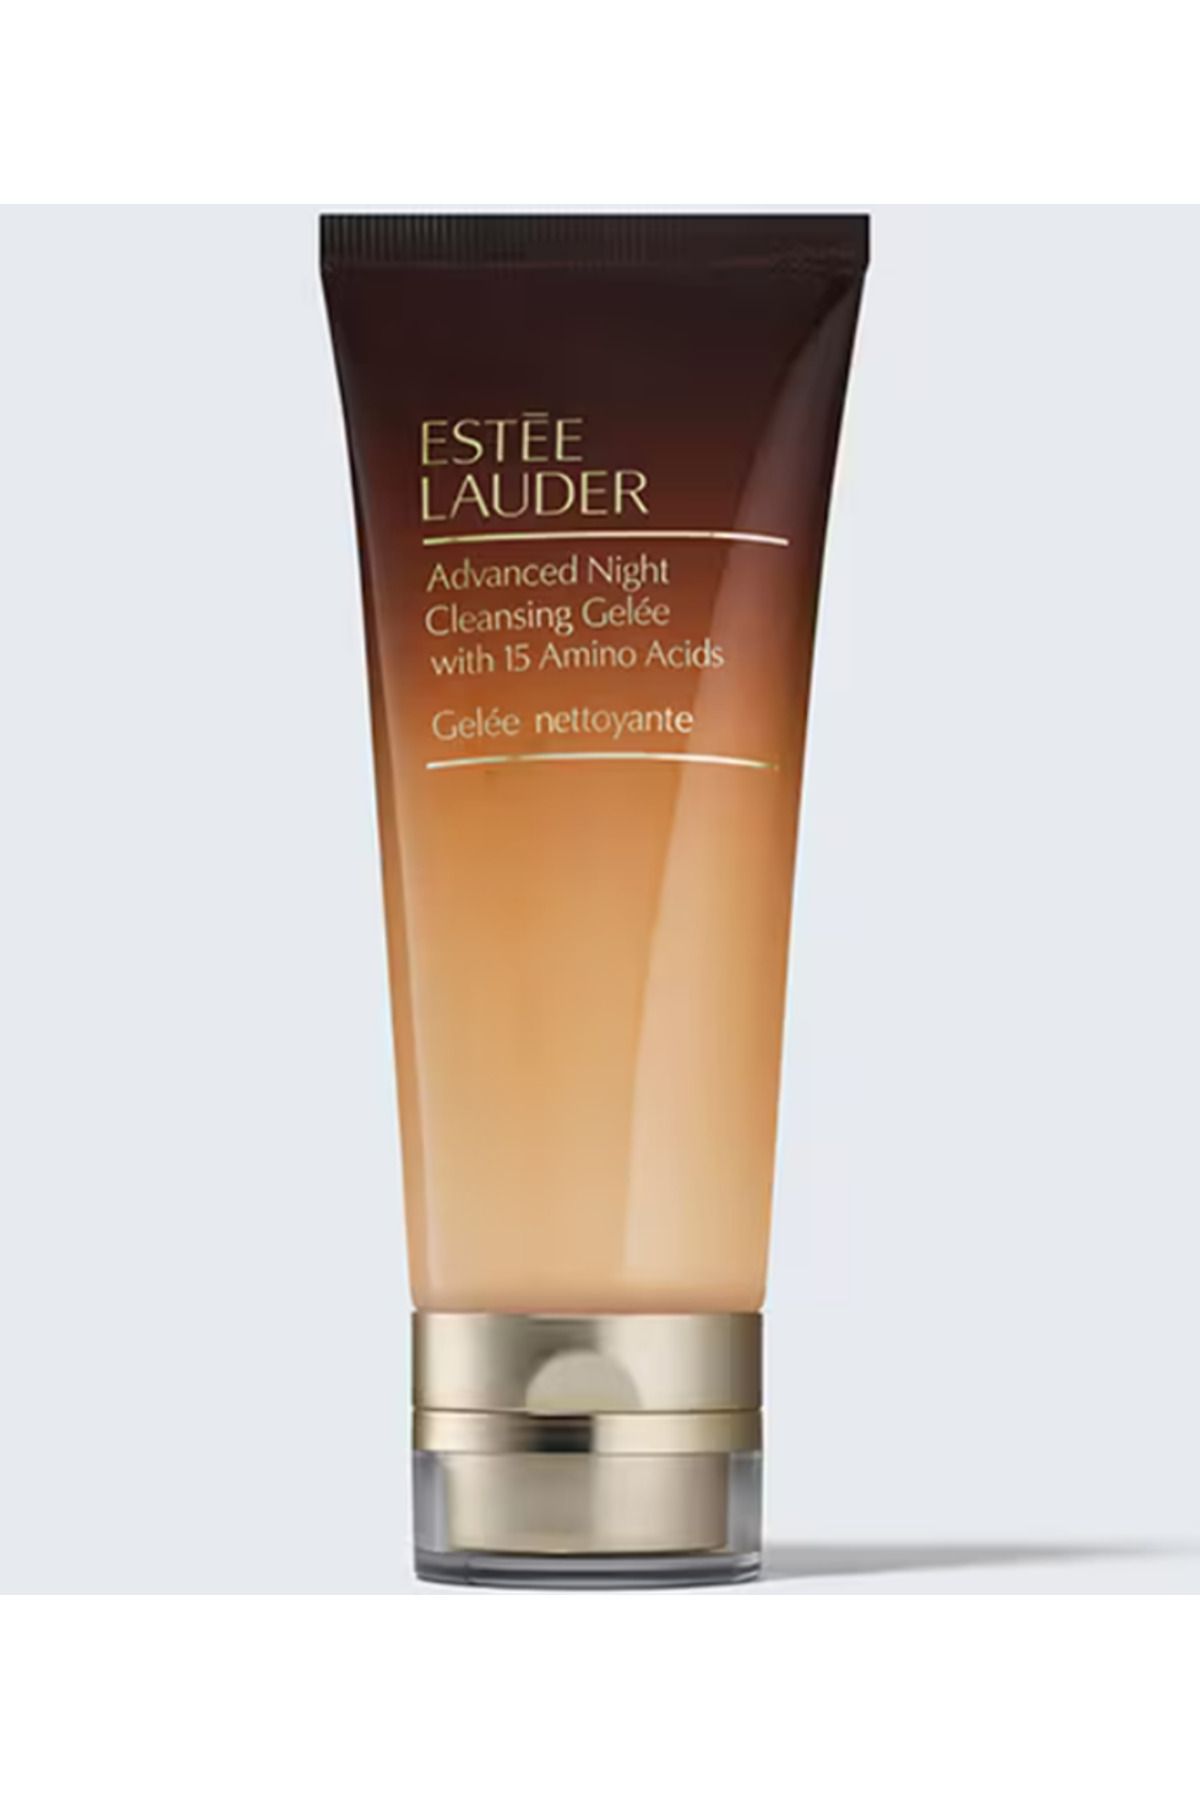 Estee Lauder Advanced Night Cleansing Gelee - Jel Yüz Temizleyici 100ml